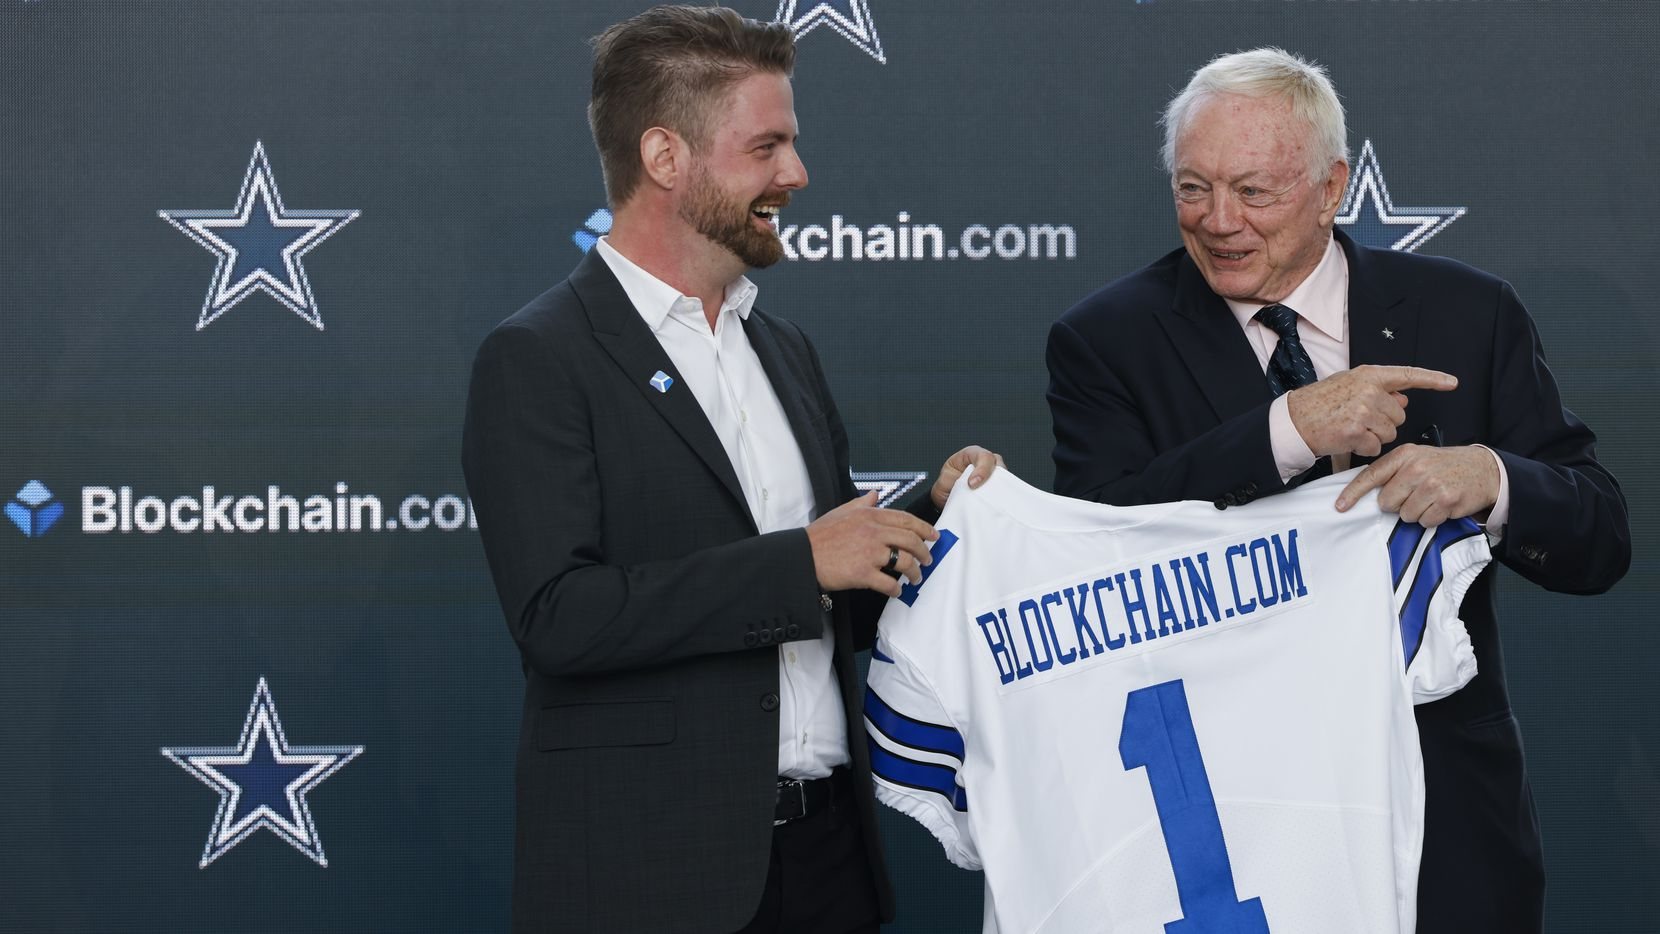 Les Cowboys de Dallas signent un accord avec Blockchain.com alors que les équipes de la NFL commencent à adopter la cryptographie